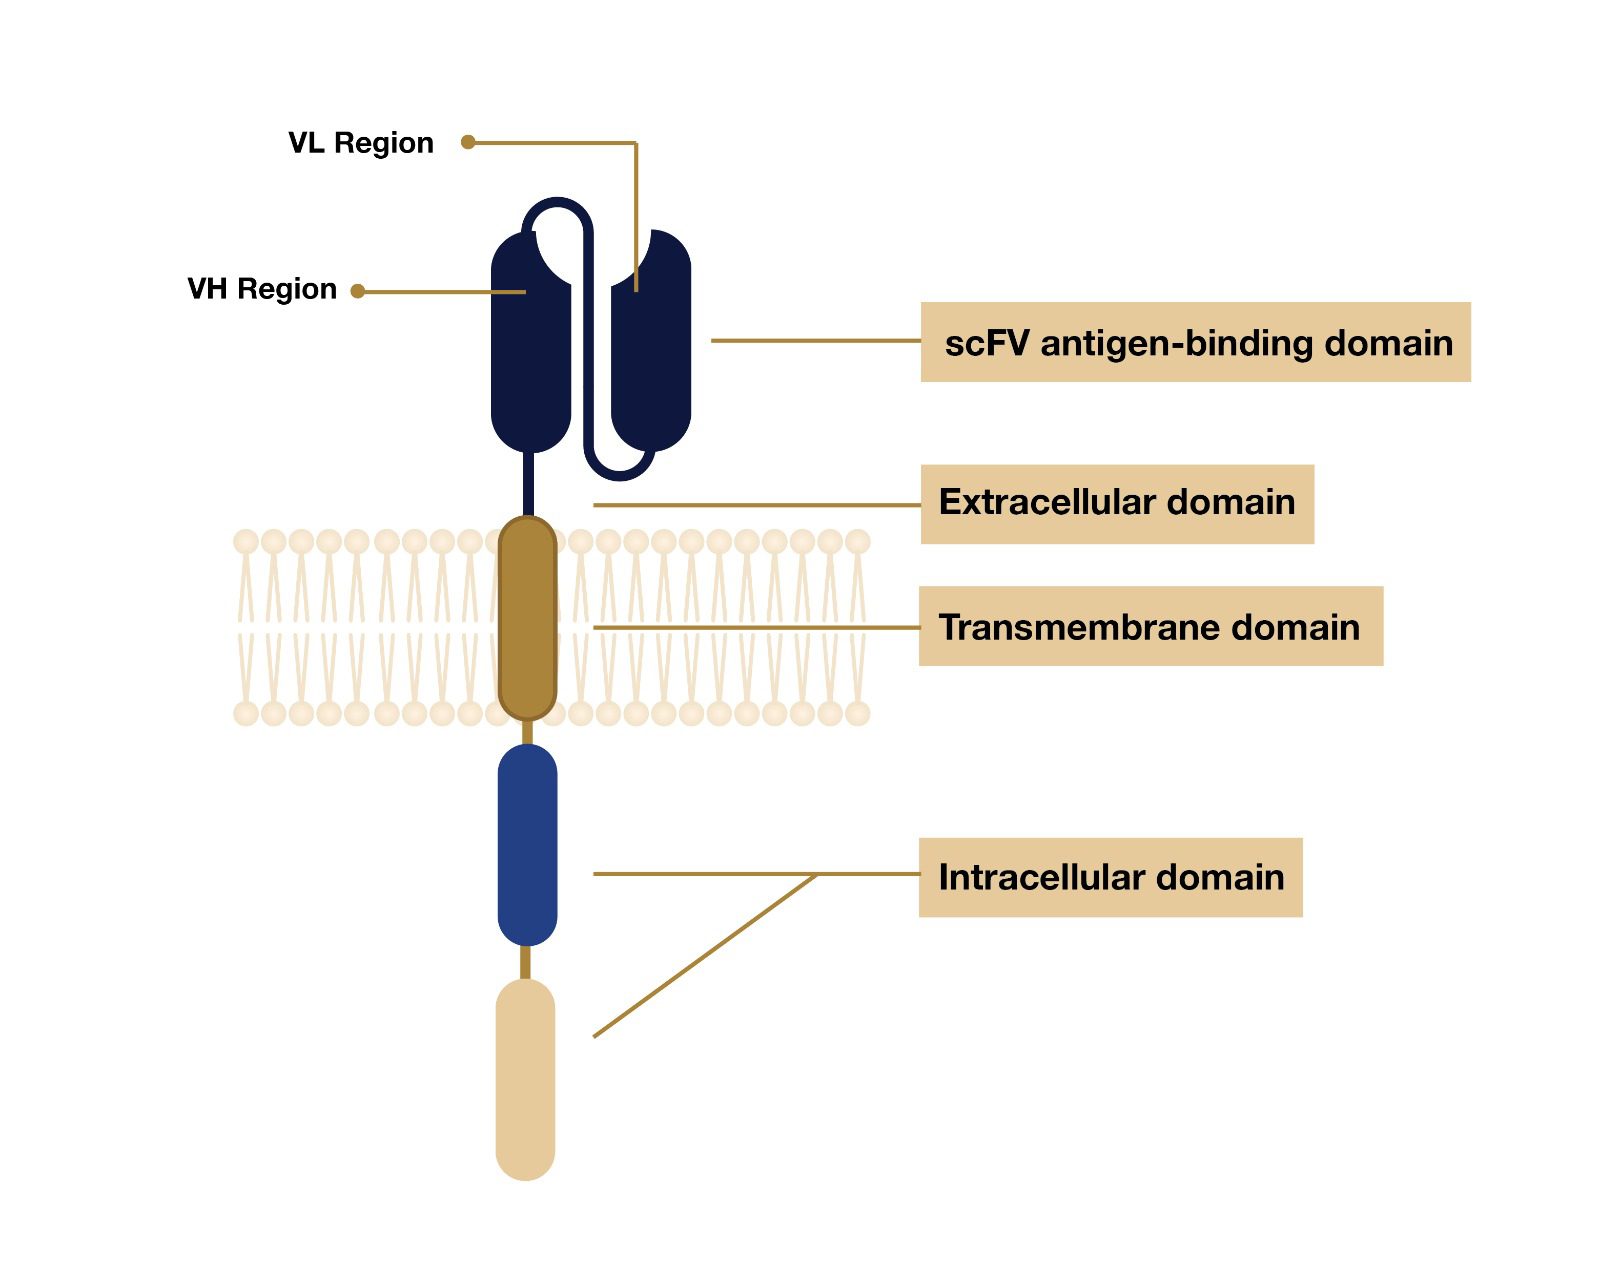 CAR-T 整體結構的視覺表示。它顯示了 3 個主要部分：細胞外結構域、跨膜結構域和細胞內結構域。